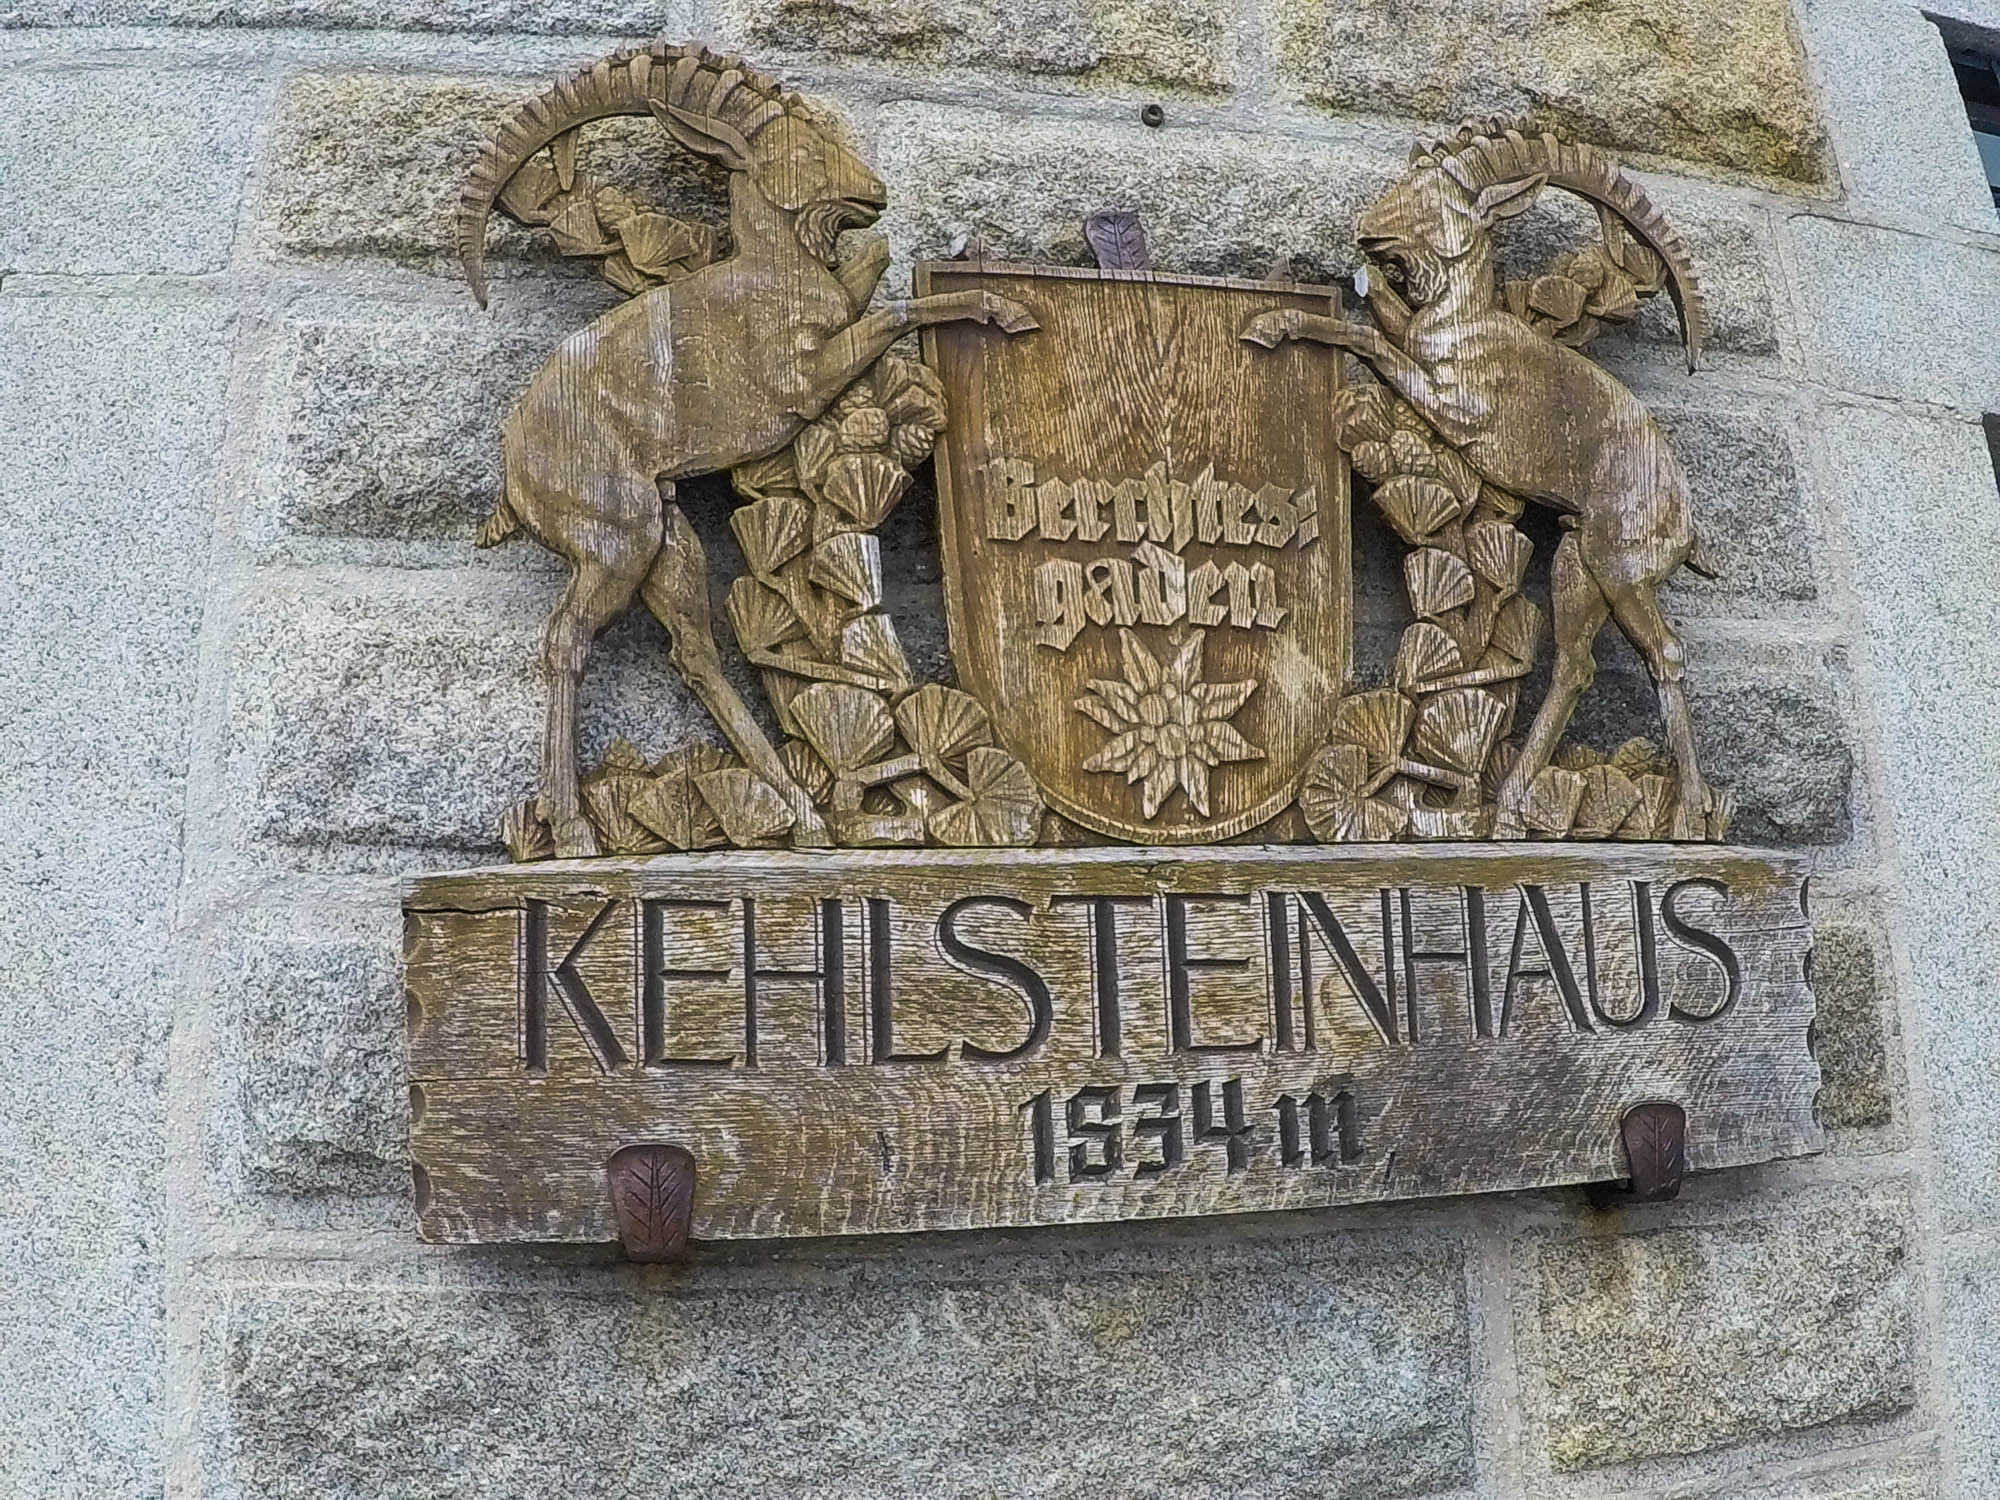 Na Kehlsteinhaus vo výške 1834 metrov sa dá vyviesť autobusom, prípadne ísť pešo. Cesta môže zabrať vyše 2 hodiny.